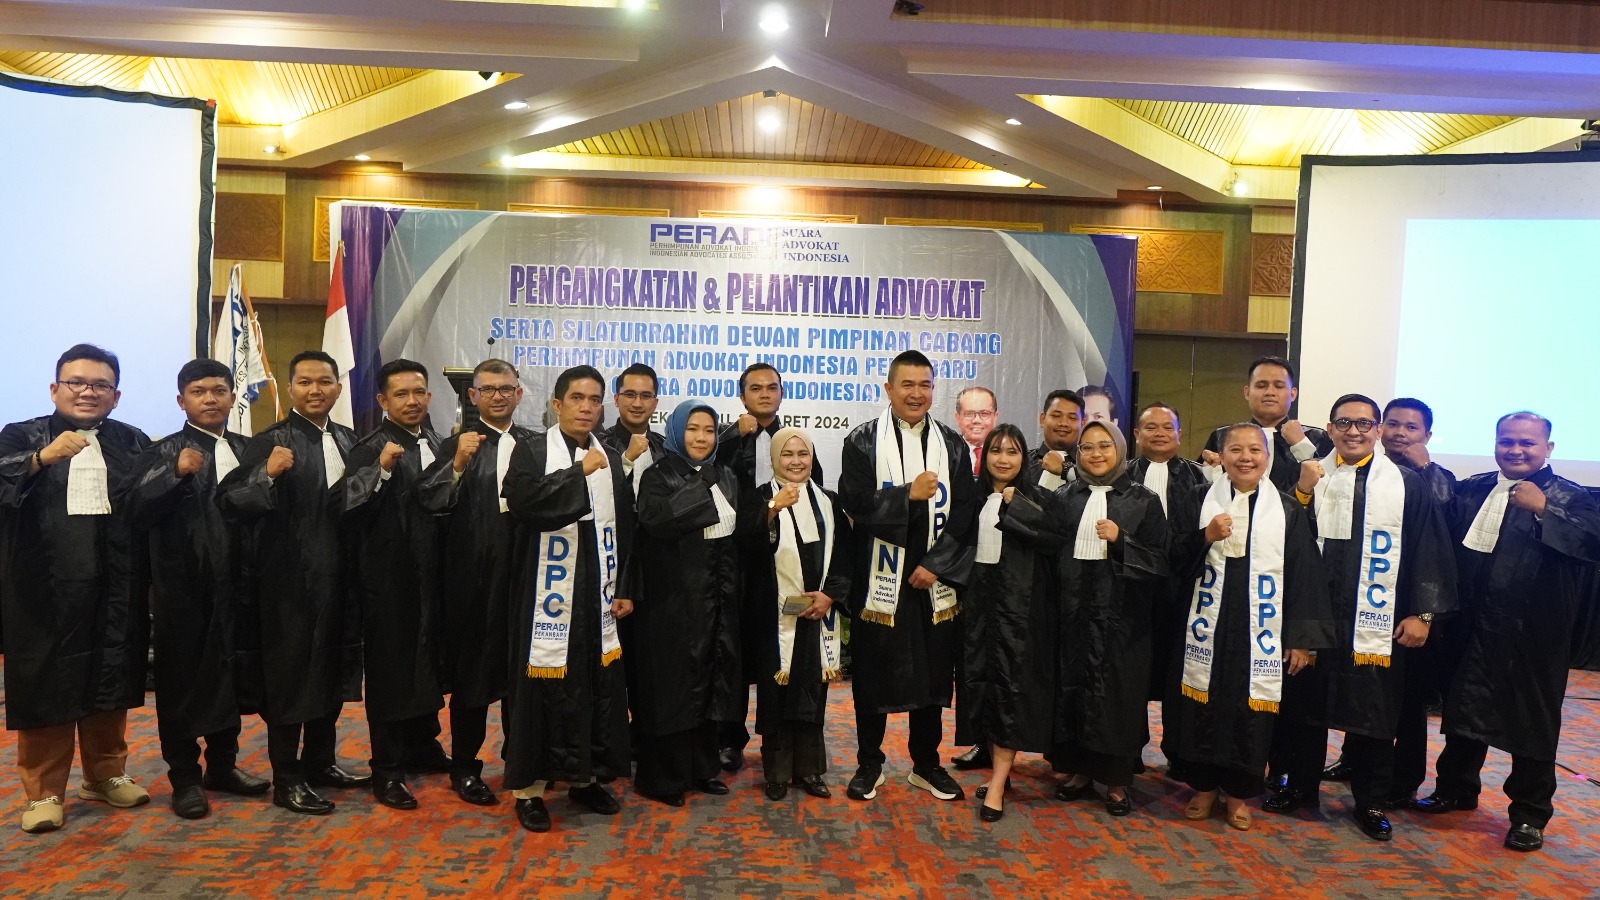 DPC PERADI SAI Pekanbaru melaksanakan pengangkatan dan pelantikan Advokat, pada tanggal 20 Maret 2024 di Hotel Pangeran, Pekanbaru. Lalu, Setelah agenda Pengangkatan dan Pelantikan, kegiatan dilanjutkan Silaturahmi dengan Berbuka puasa bersama seluruh pengurus dan Anggota DPC Pekanbaru, dan Agenda Pengambilan sumpah / janji Advokat dilakukan di Pengadilan Tinggi, Riau pada 21 Maret 2024, dengan jumlah Advokat yang dilantik 15 Orang.